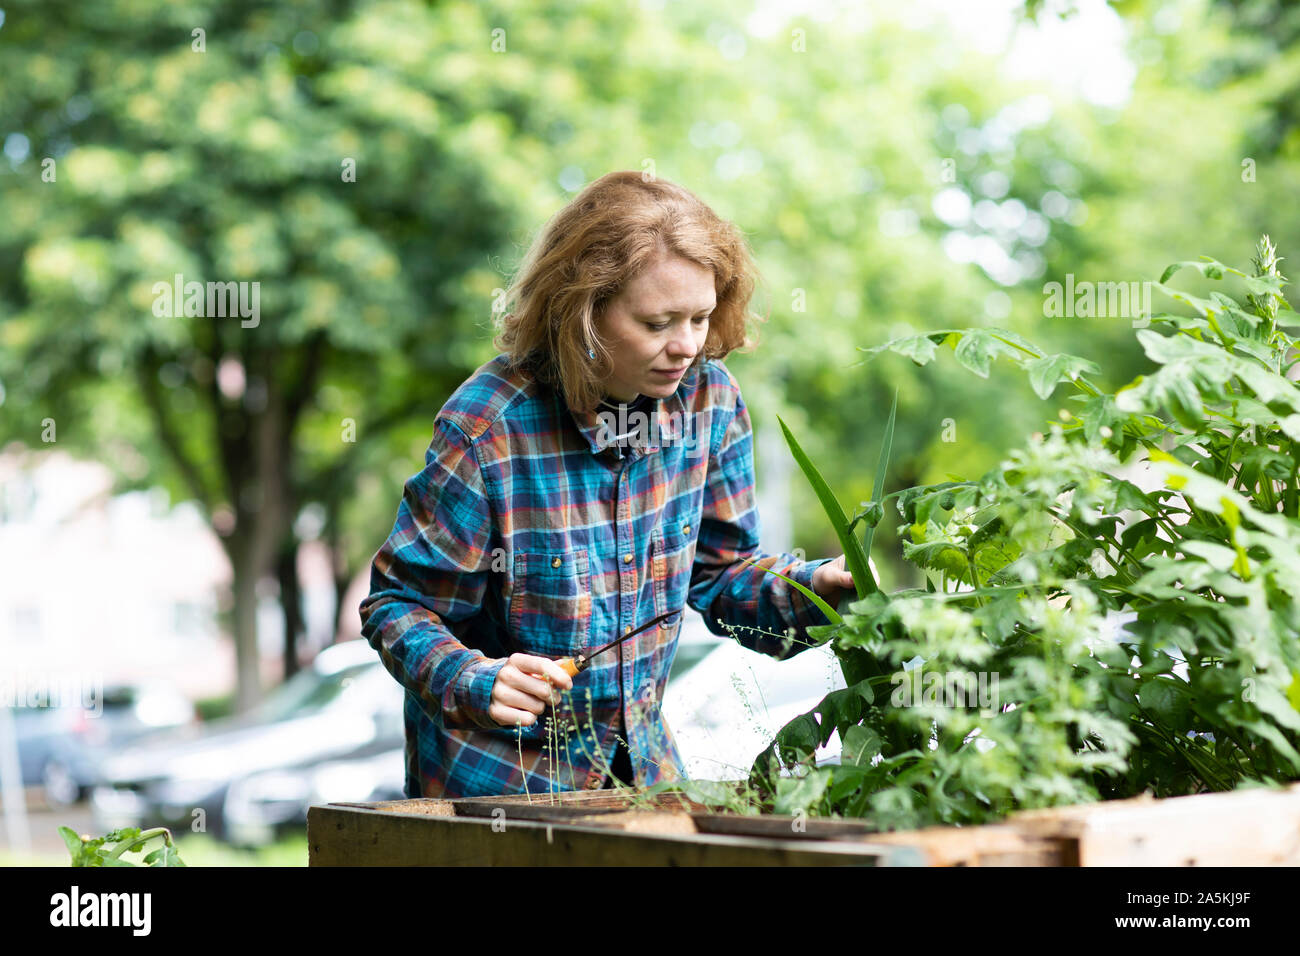 Mid adult woman tending plant dans son jardin Banque D'Images